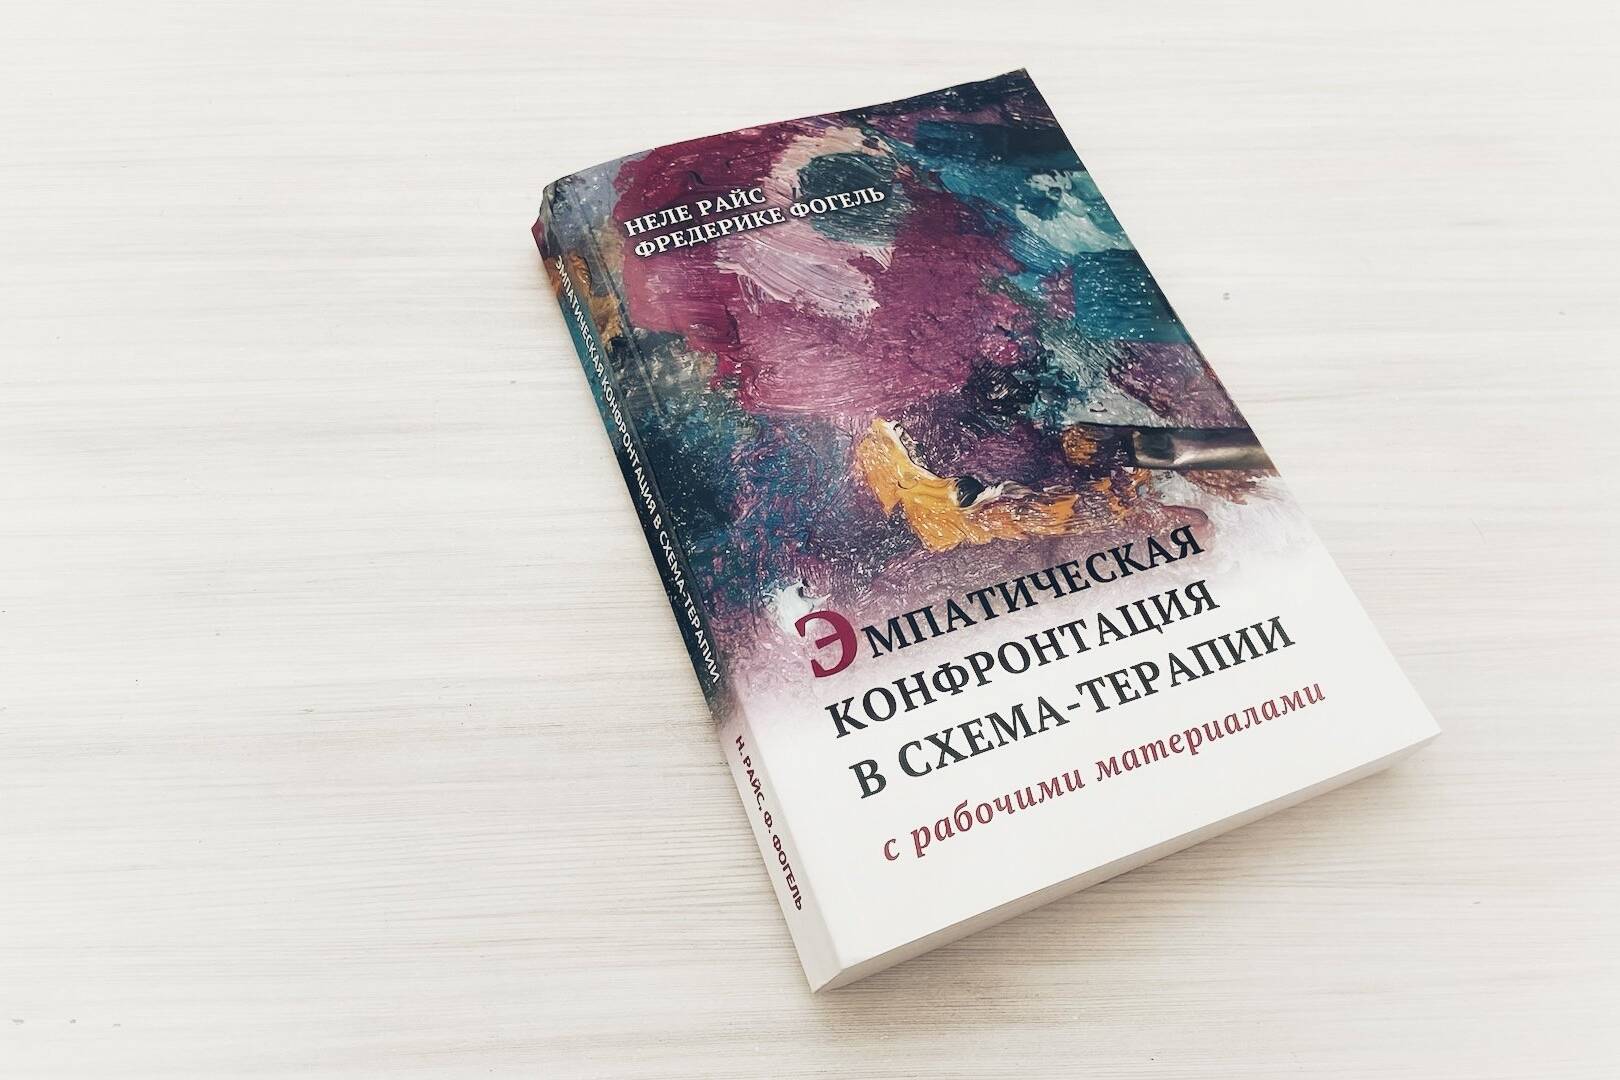 Книга Эмпатическая конфронтація в Схема-терапии Неля Райське и Фредерике Фогель